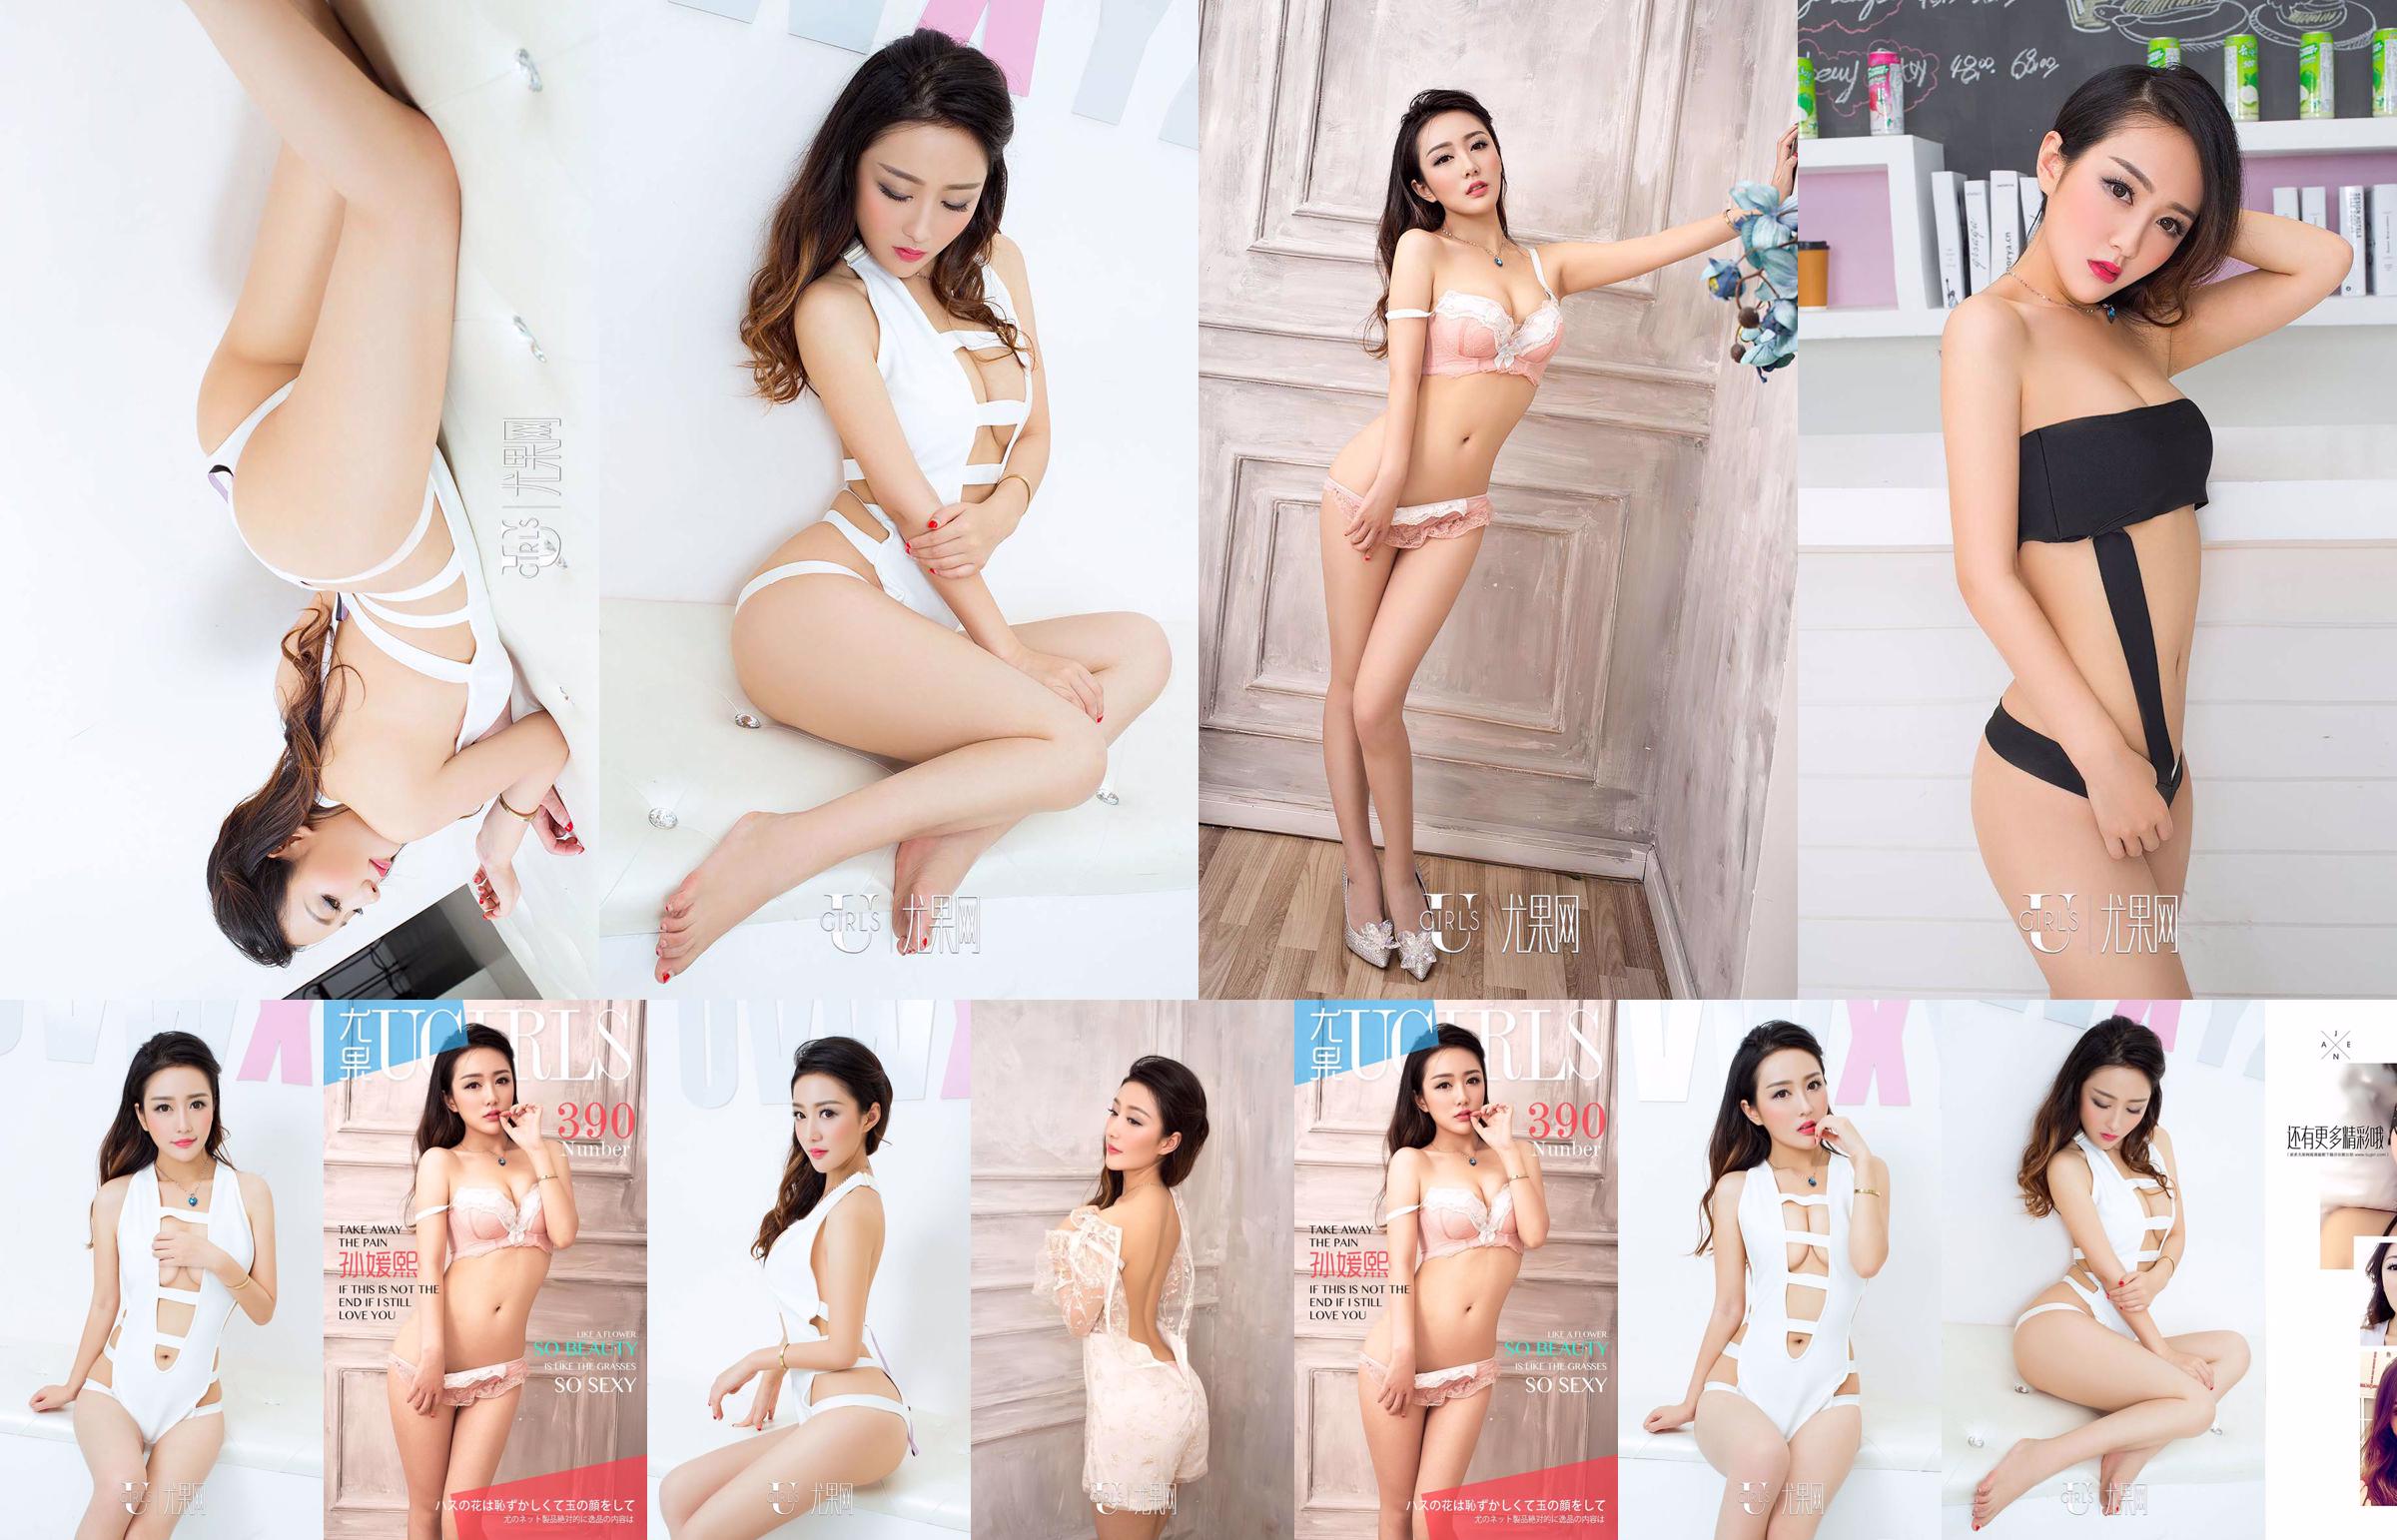 Sun Yuanxi "tão bela tão sexy" [爱 优 物 Ugirls] No.390 No.221eab Página 1